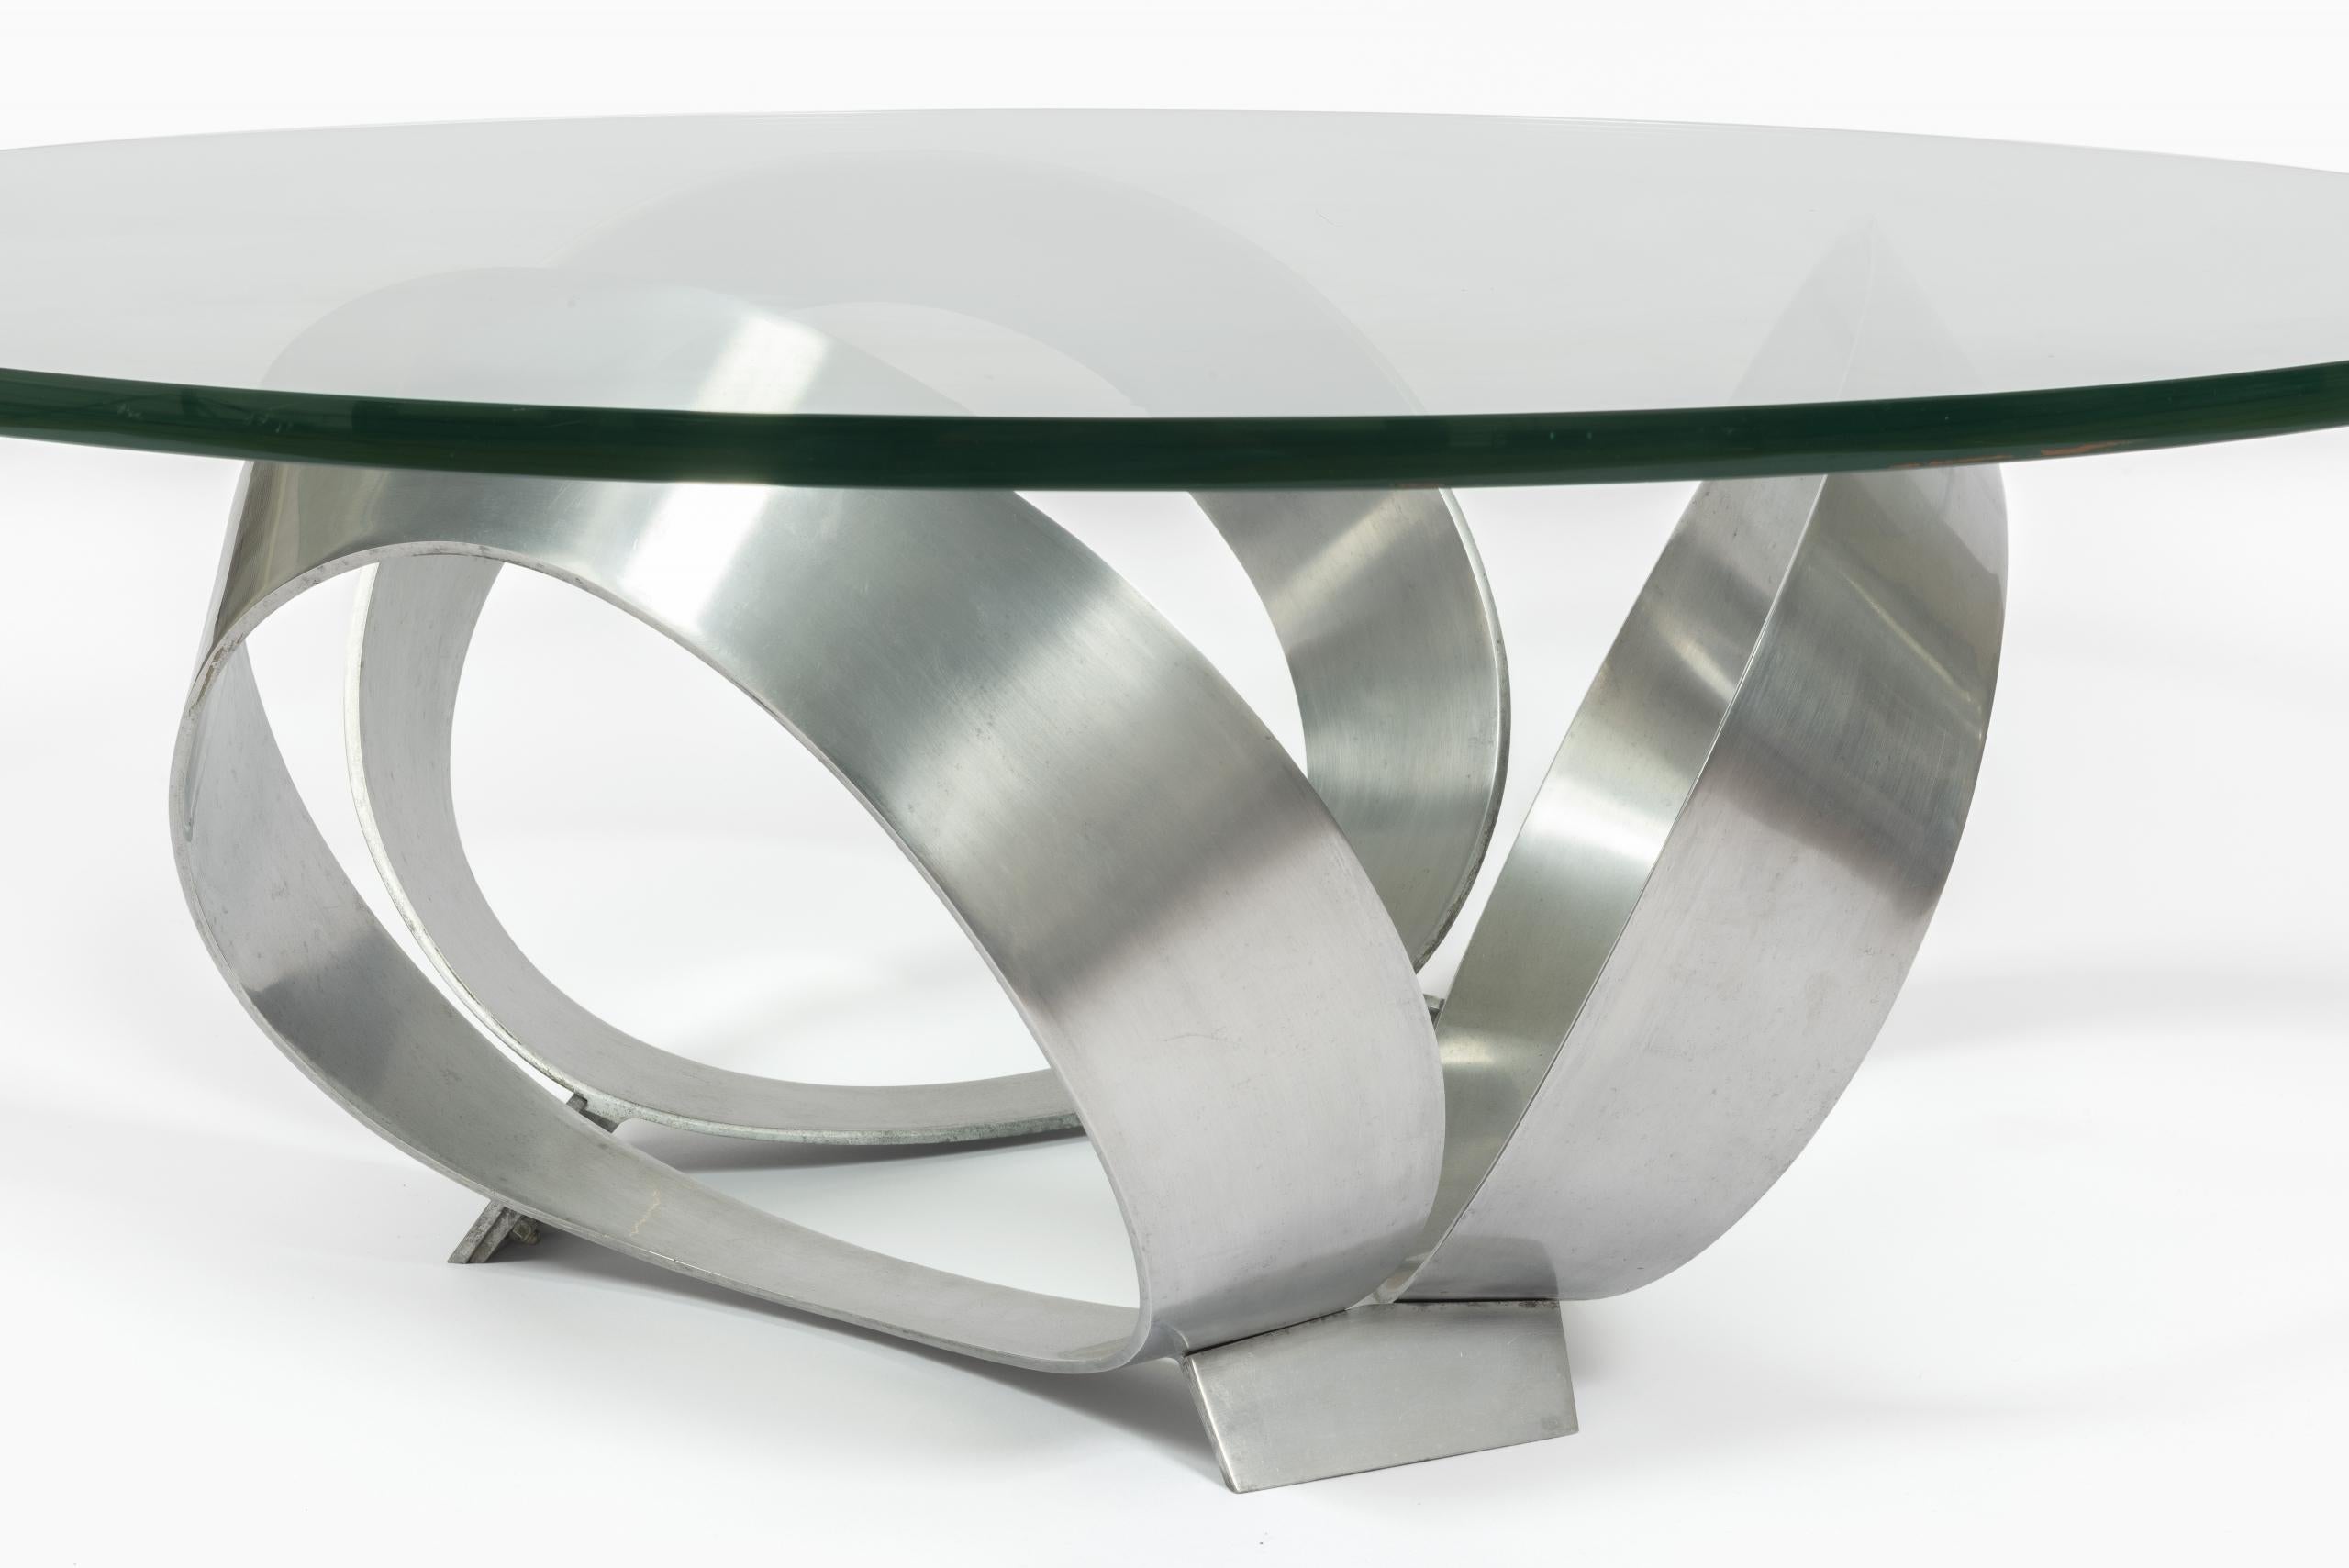 Tisch aus den 1960er Jahren im minimalistischen Design von Knut Hesterberg für Ronald Schmitt.

Avec base sculpturale en acier brossé et plateau en verre d'une épaisseur de 2 cm.